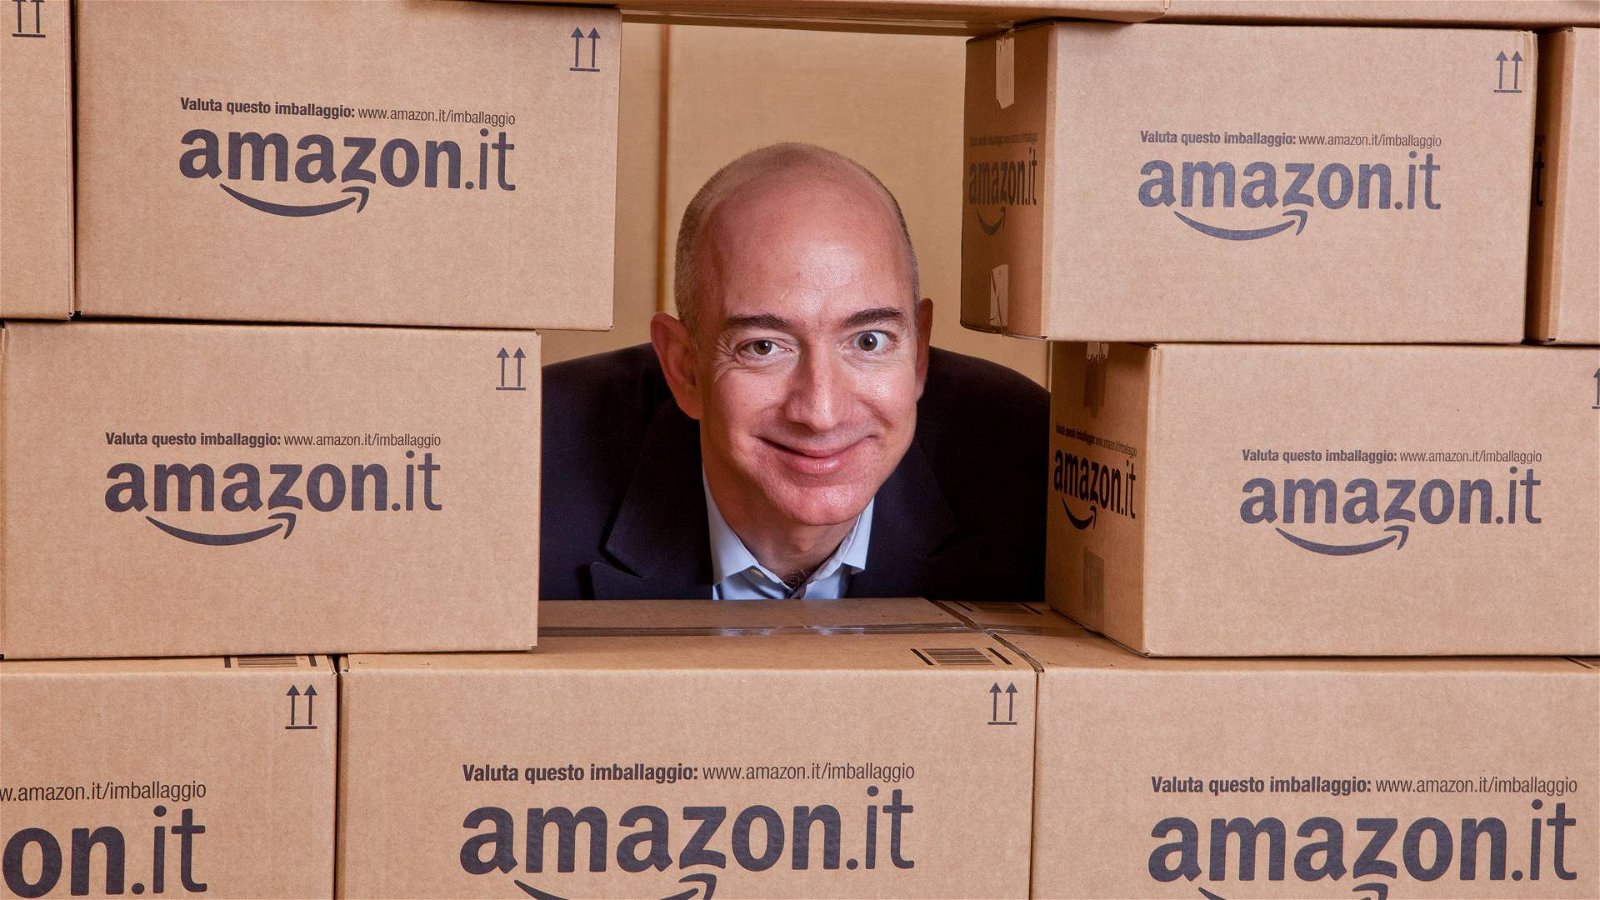 Immagine di Amazon UK, 100 venditori hanno subito una truffa informatica senza precedenti